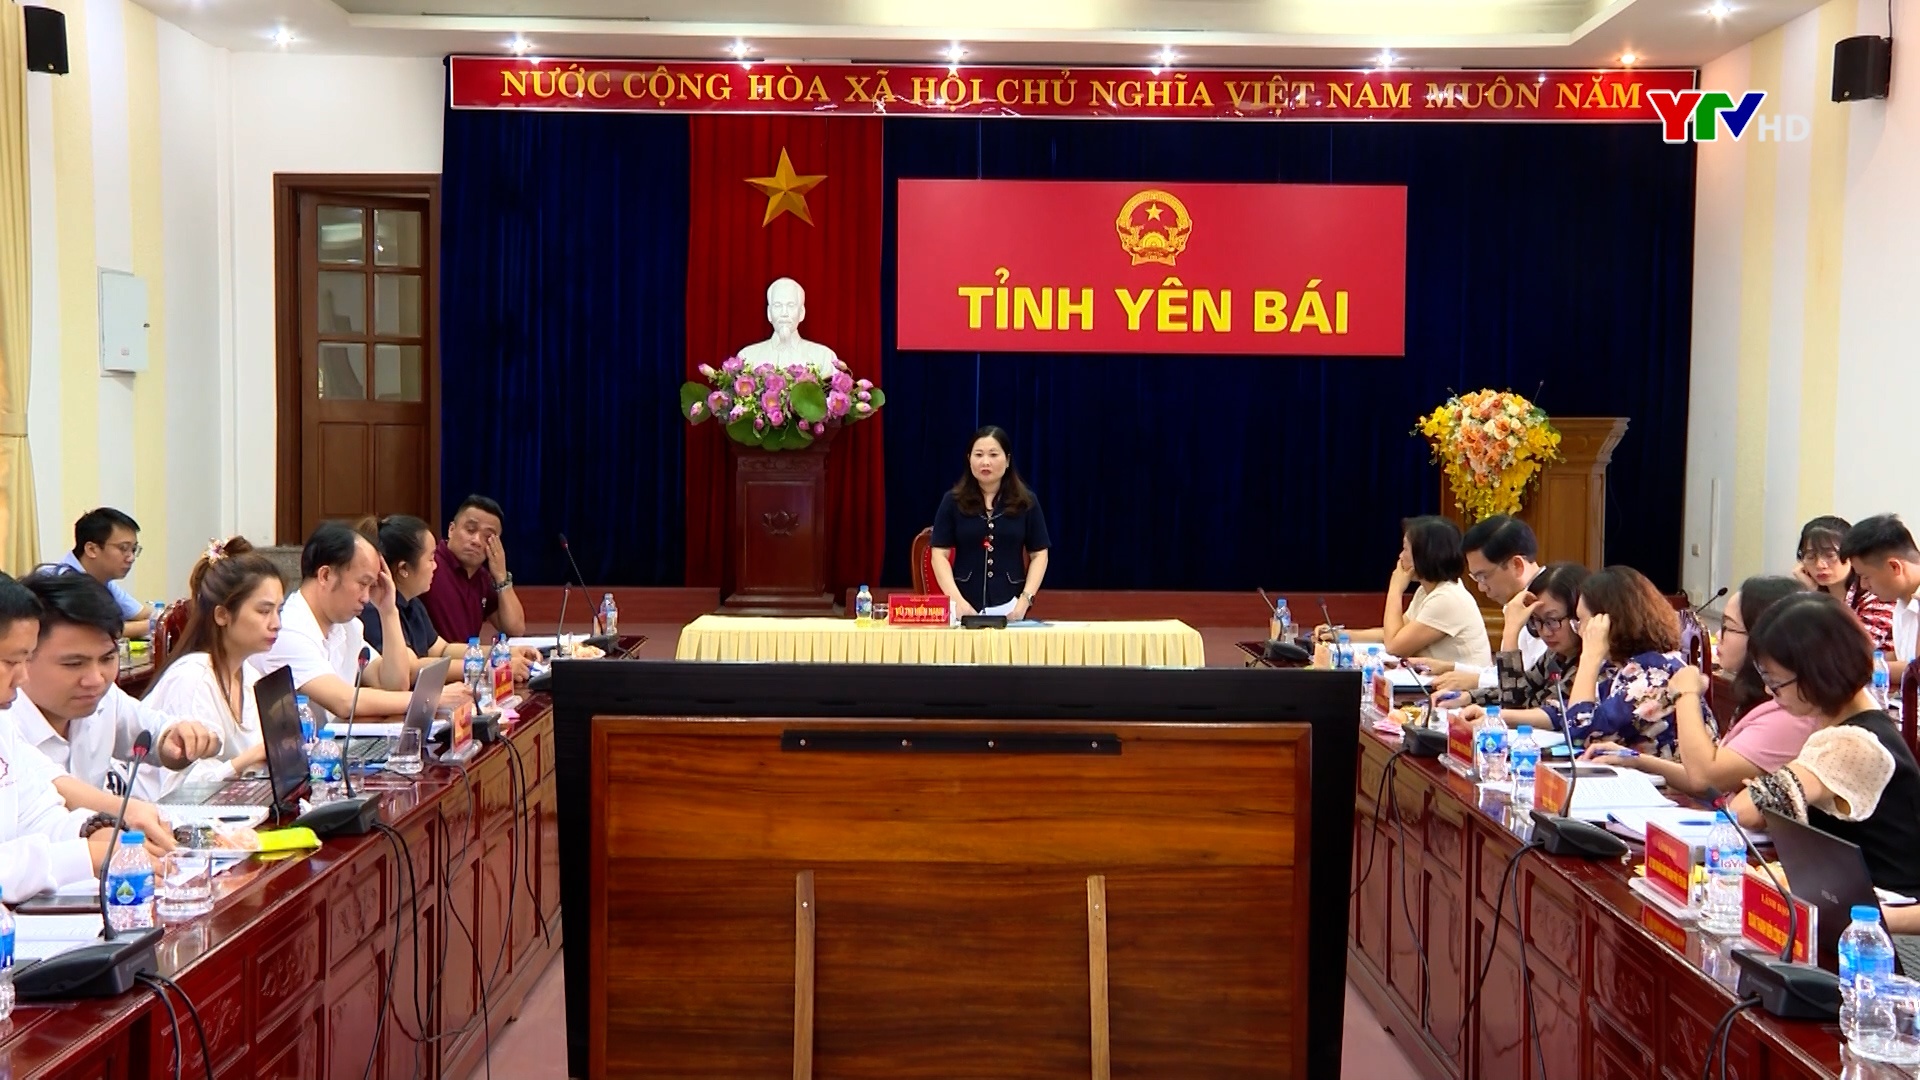 Đồng chí Phó Chủ tịch UBND tỉnh Vũ Thị Hiền Hạnh: Yên Bái sẽ tạo mọi điều kiện để tổ chức chương trình “Mái ấm gia đình Việt”